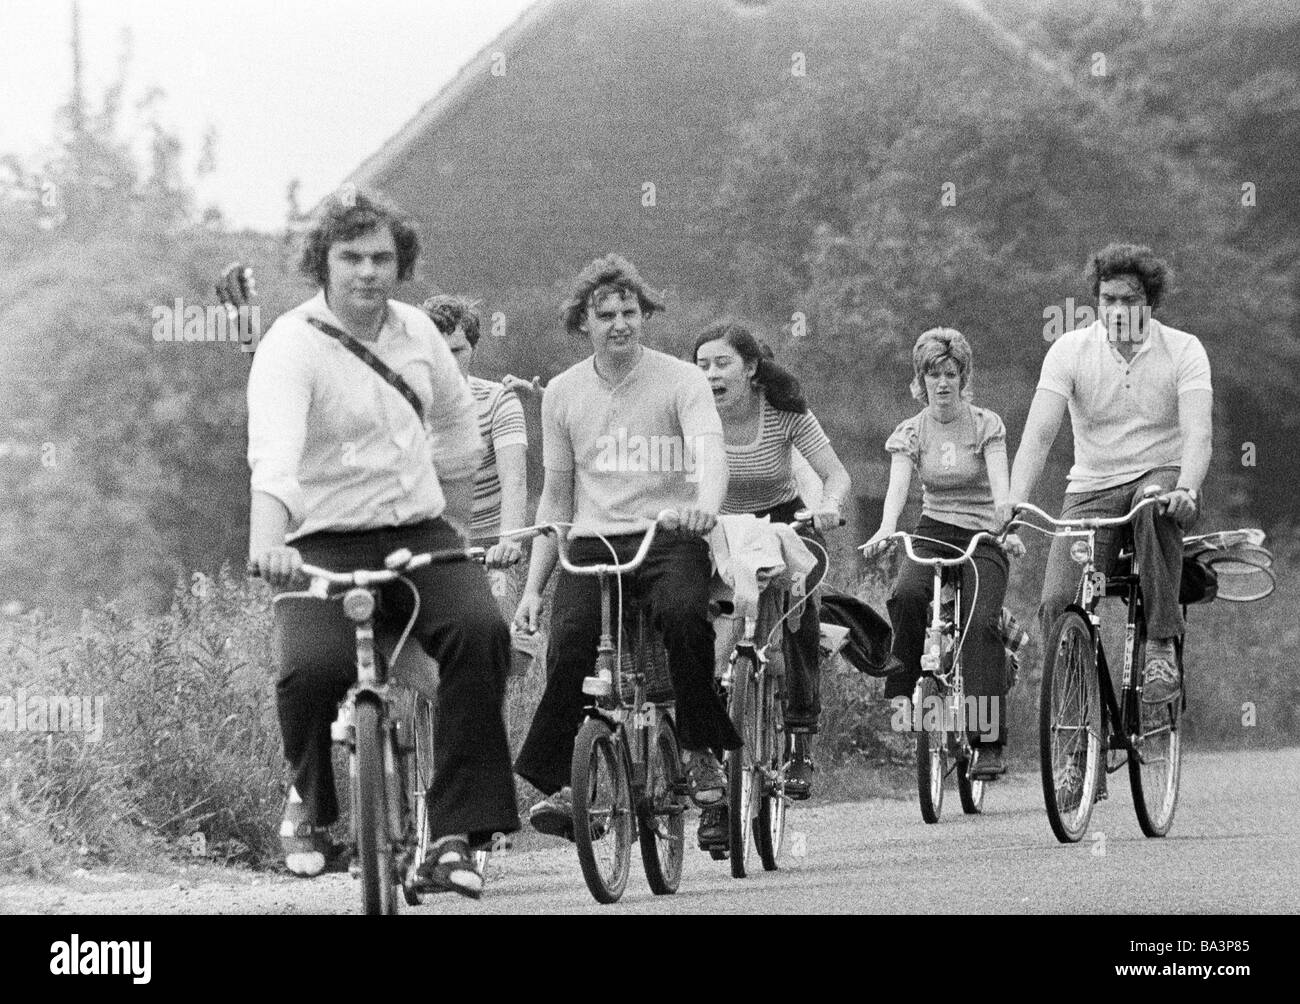 Années 70, photo en noir et blanc, le trafic routier, freetime, quatre jeunes hommes et deux jeunes femme en loisir aller sur un voyage en vélo, route de campagne, de 20 à 30 ans Banque D'Images